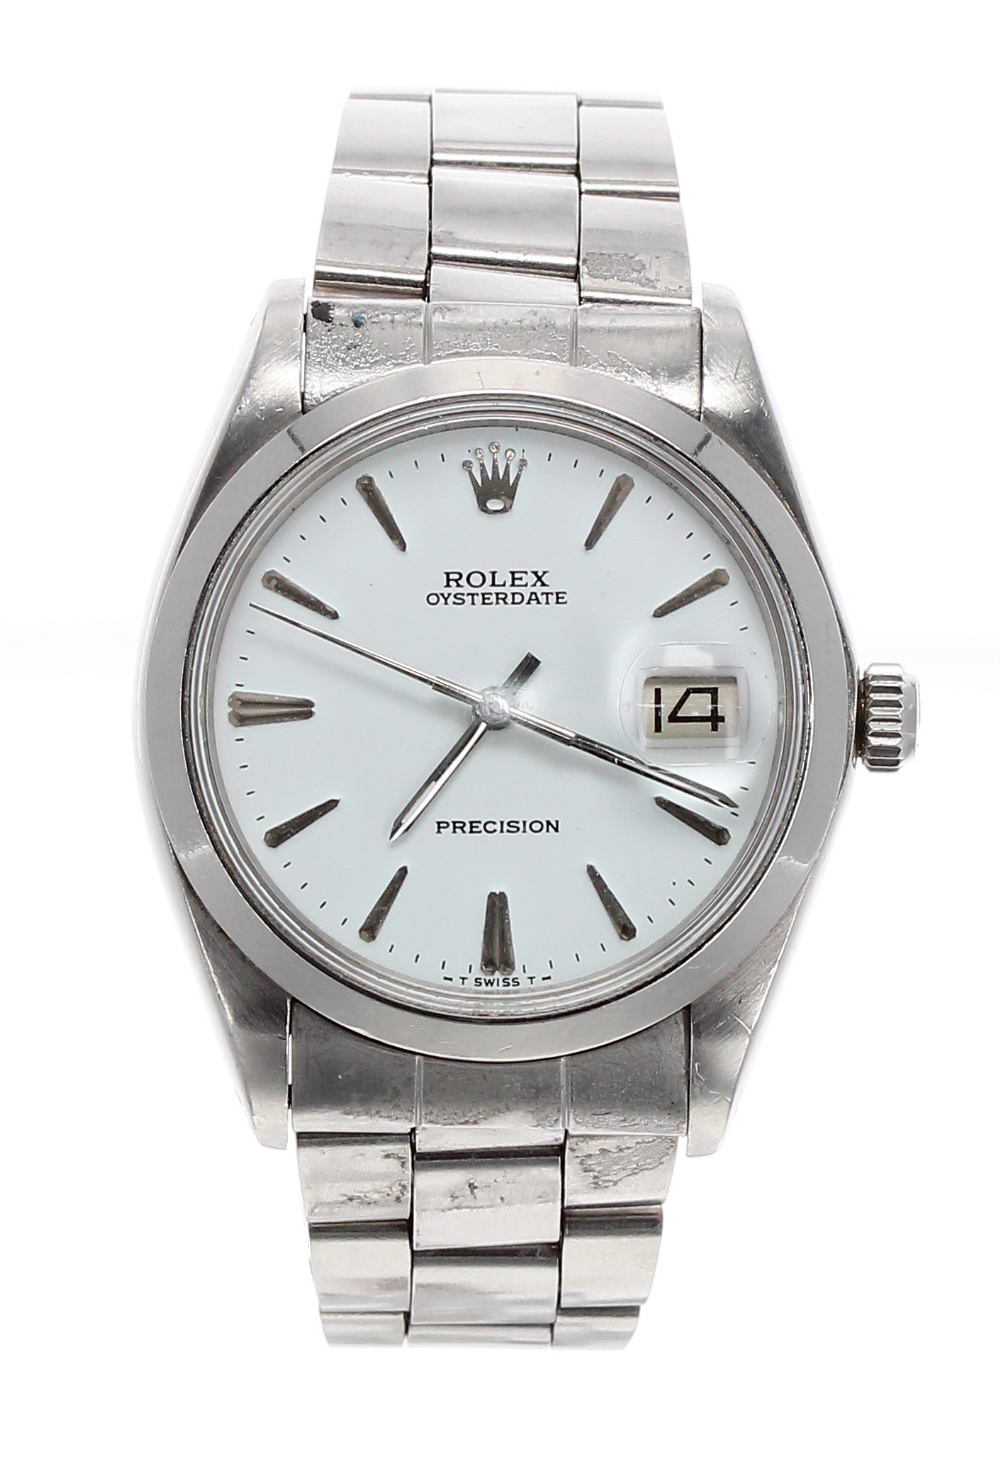 Rolex Oysterdate Precision stainless steel gentleman's bracelet watch, ref. 6694, circa 1970-71,